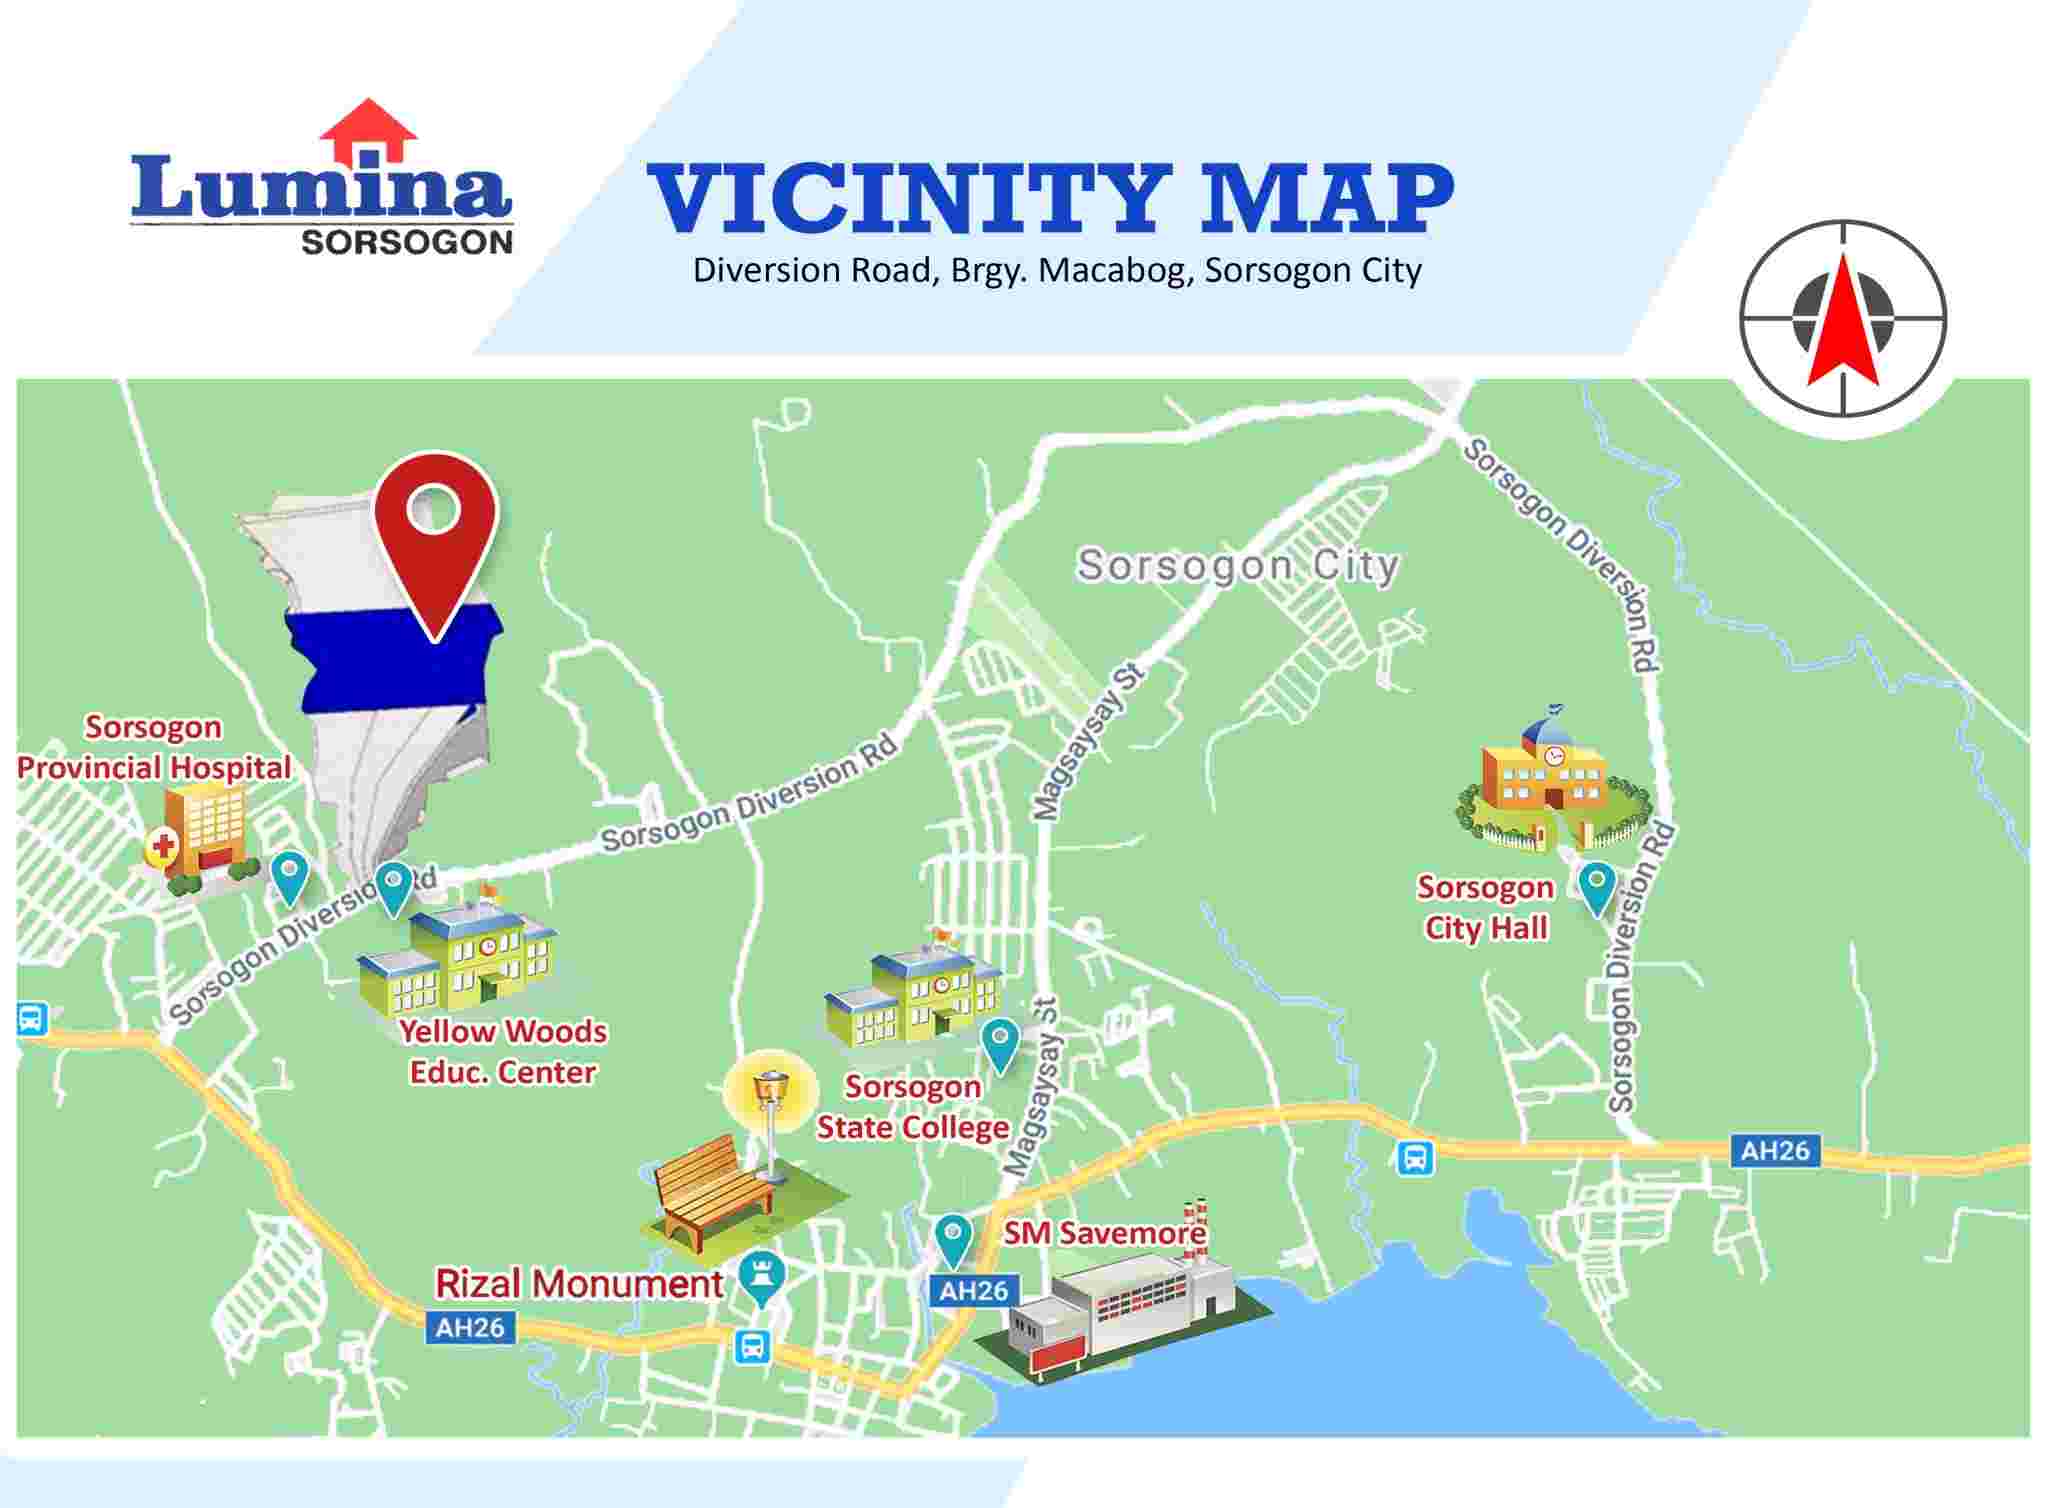 Vicinity-Map-1641799350.jpeg